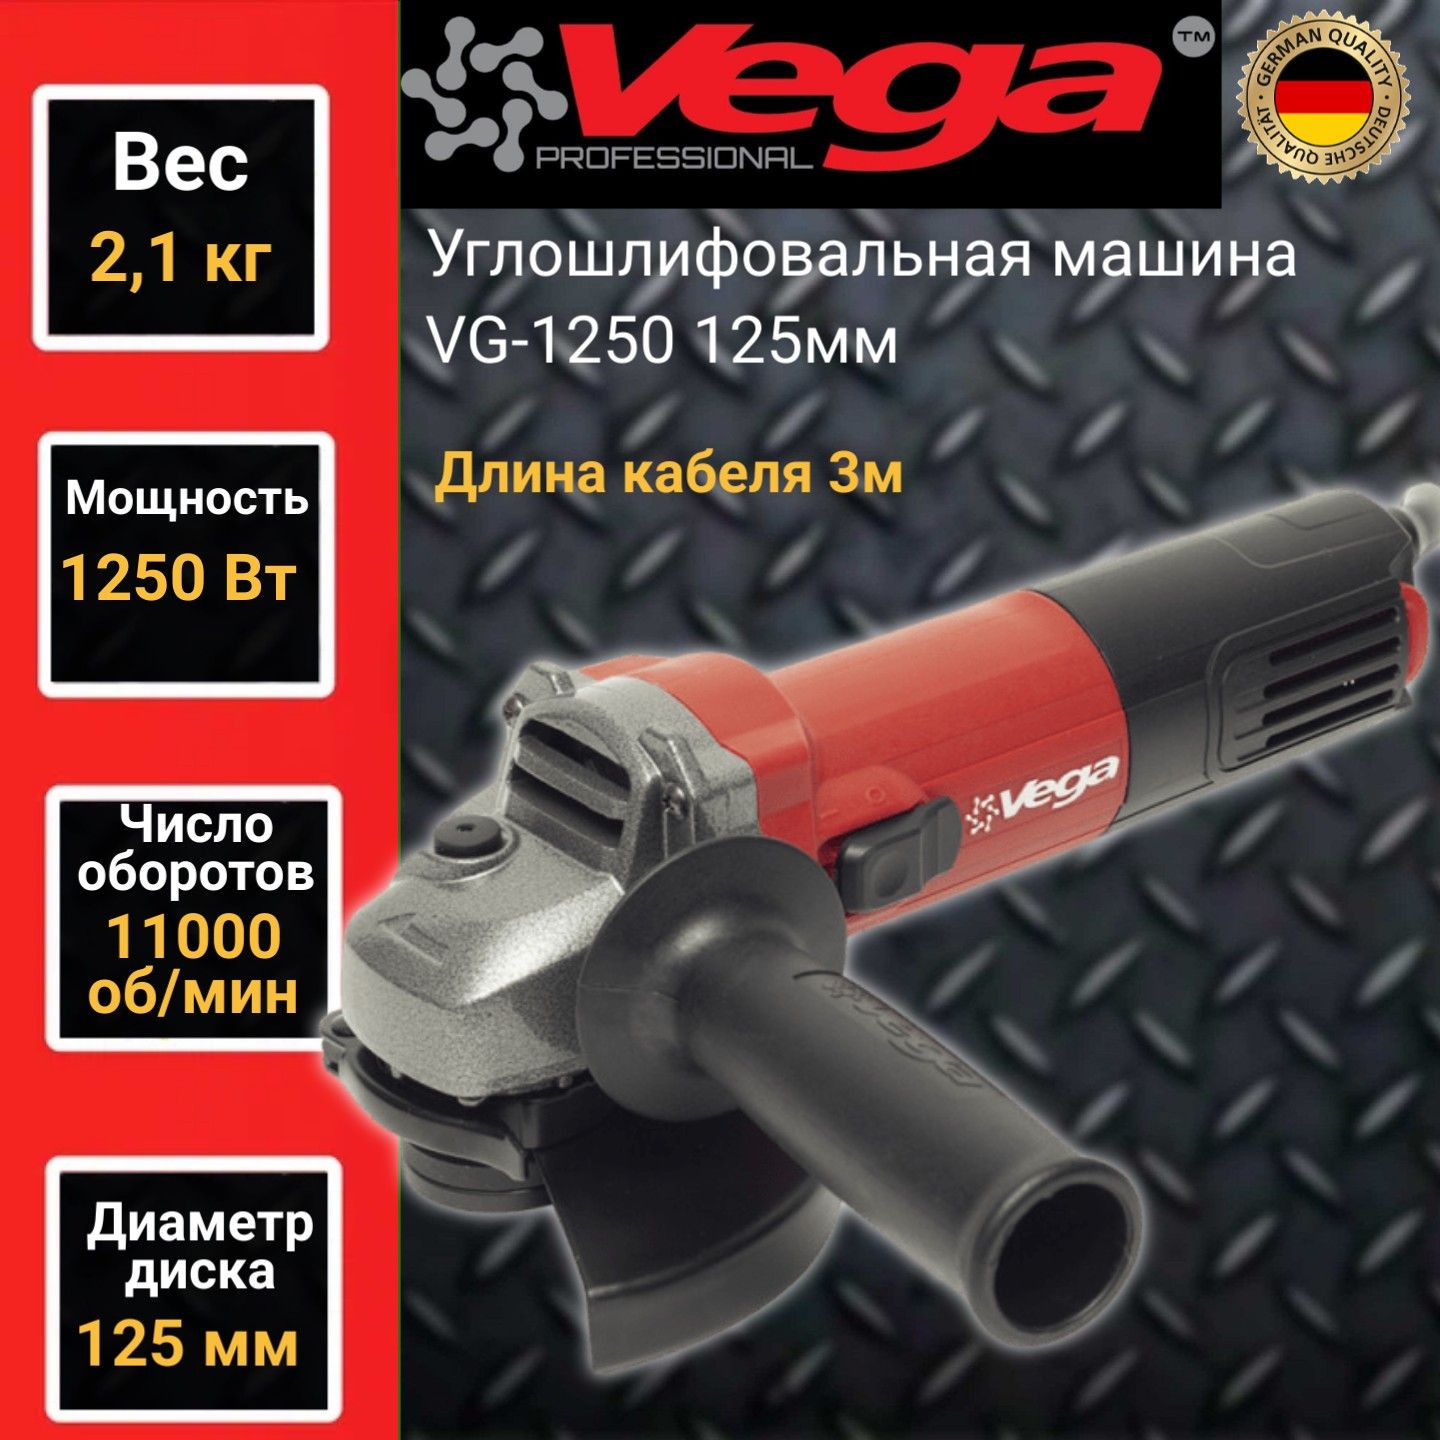 Углошлифовальная машина болгарка Vega Professional VG 1250, 125мм круг,1250Вт,11000об/мин